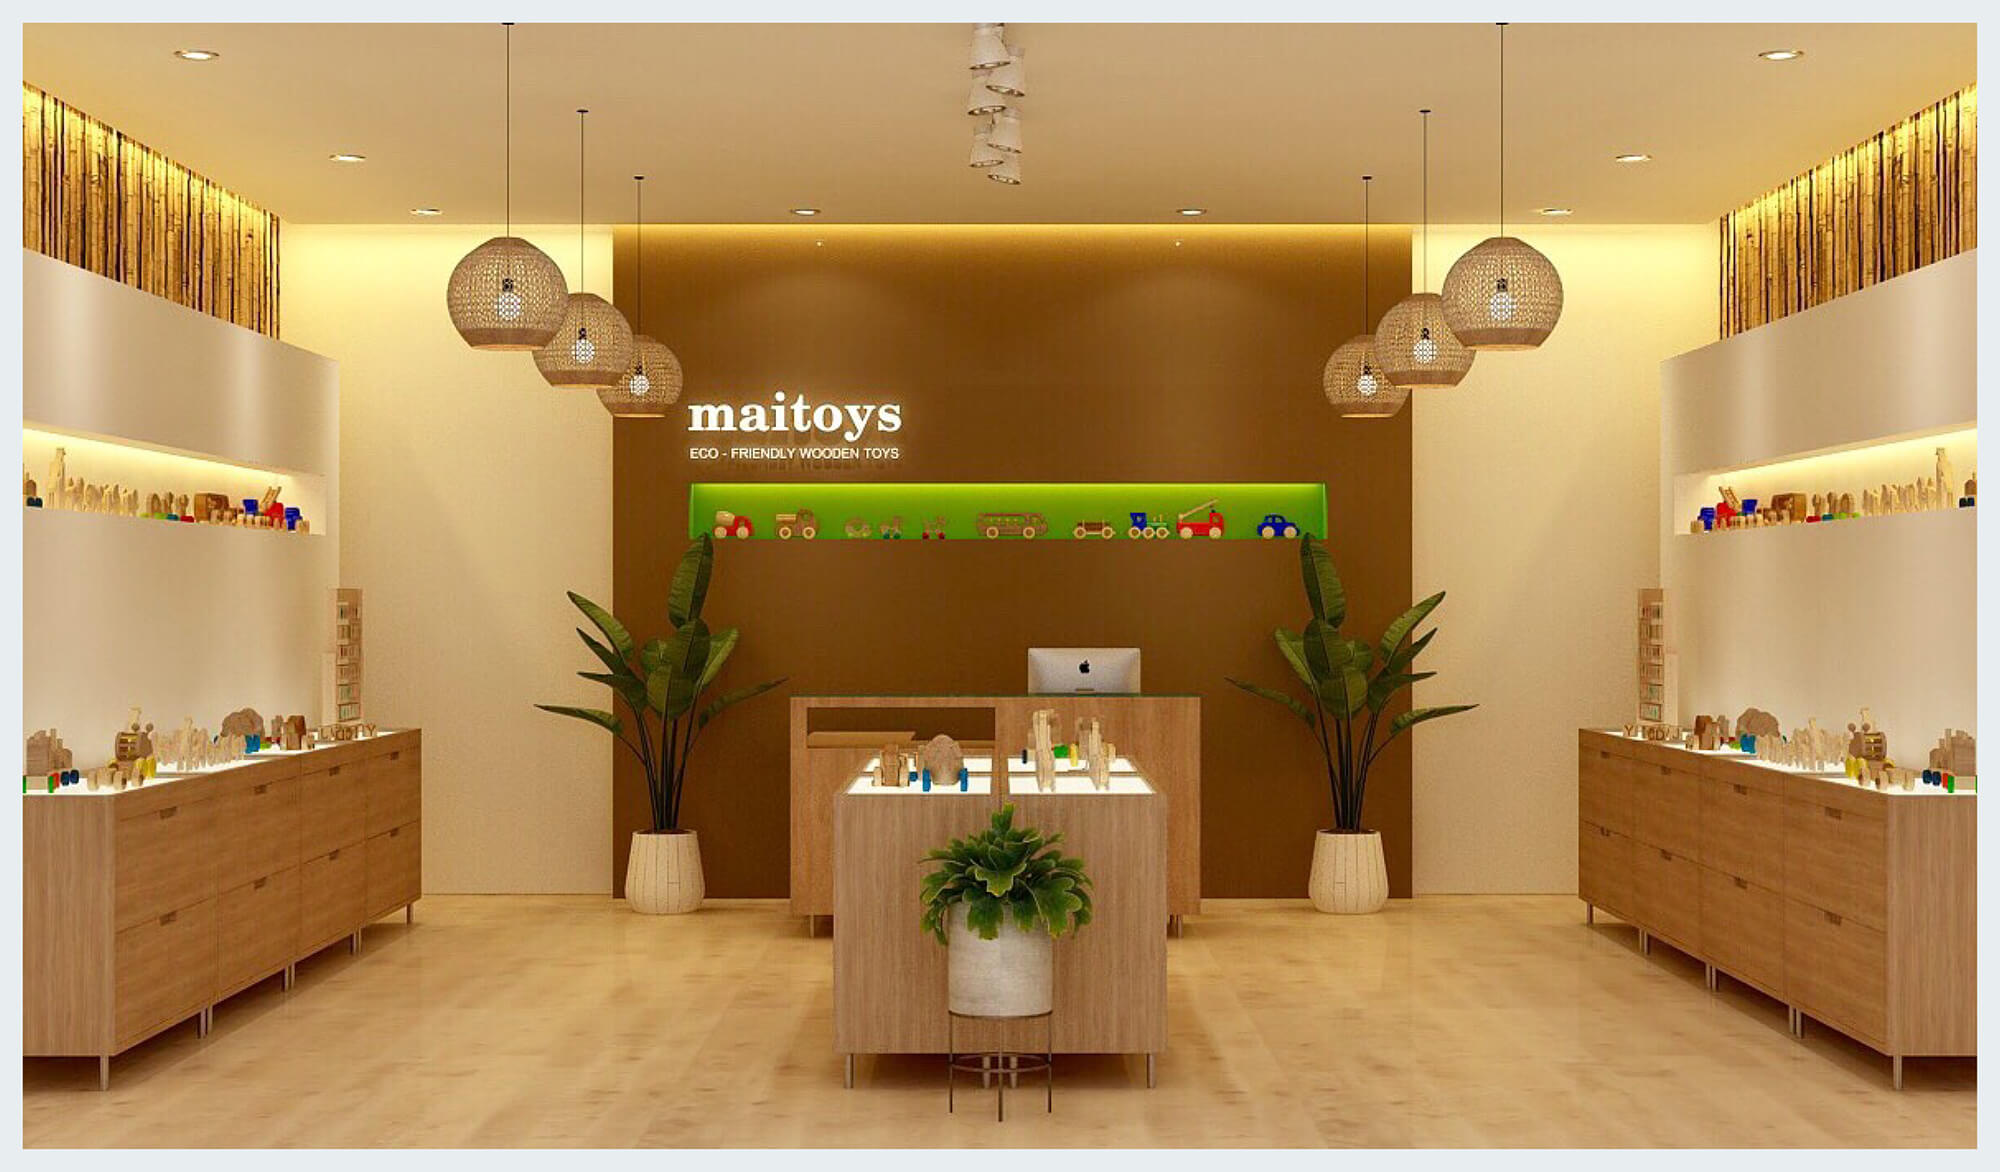 Maitoys campaign